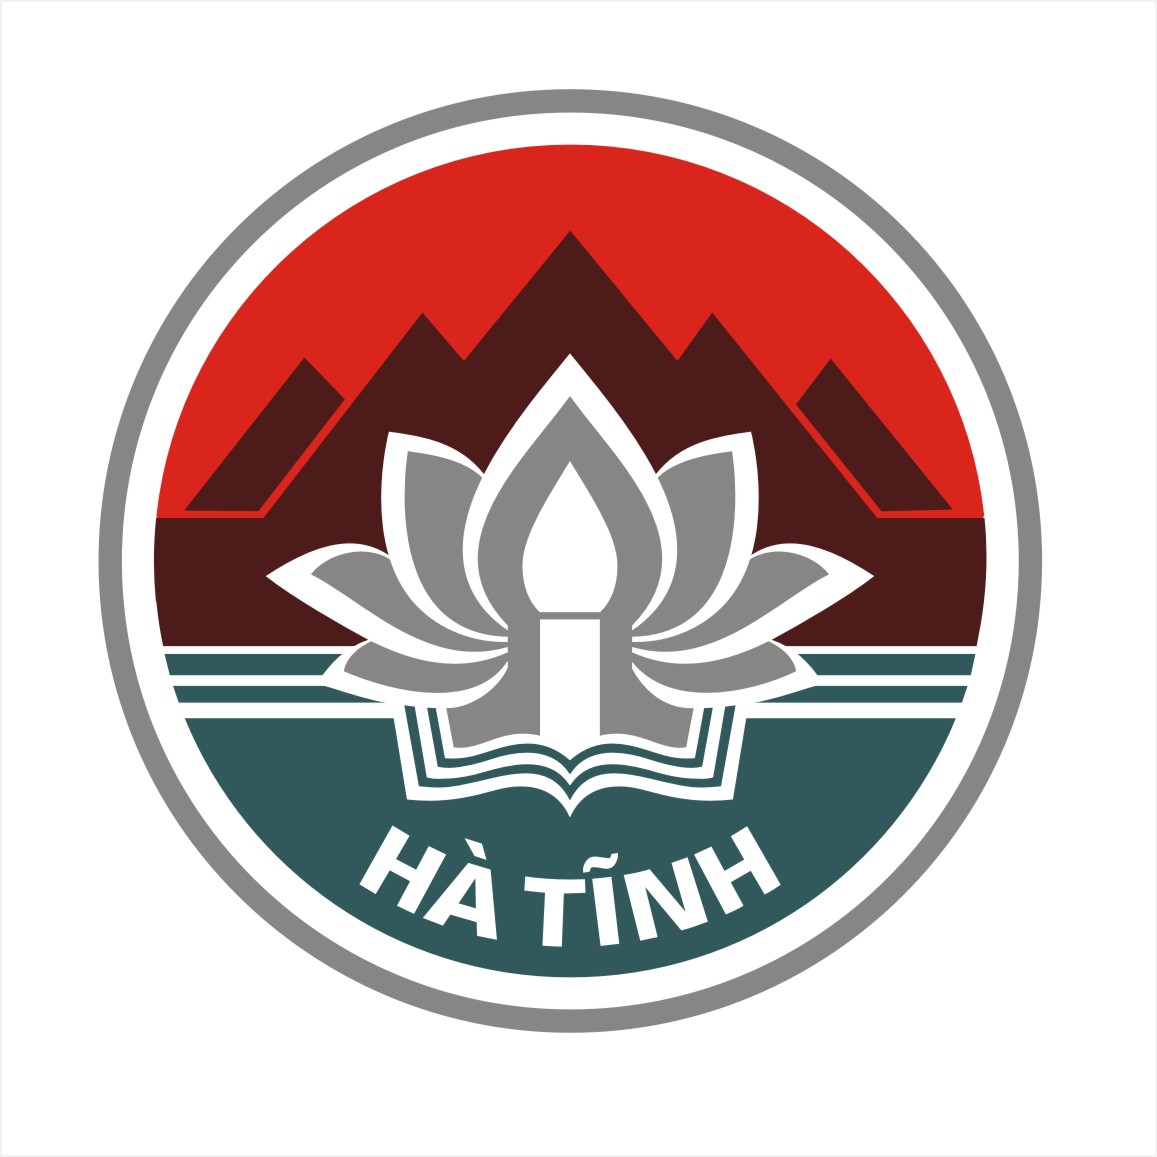 Đã chọn được biểu trưng kỷ niệm 180 năm thành lập tỉnh (logo) Hà Tĩnh